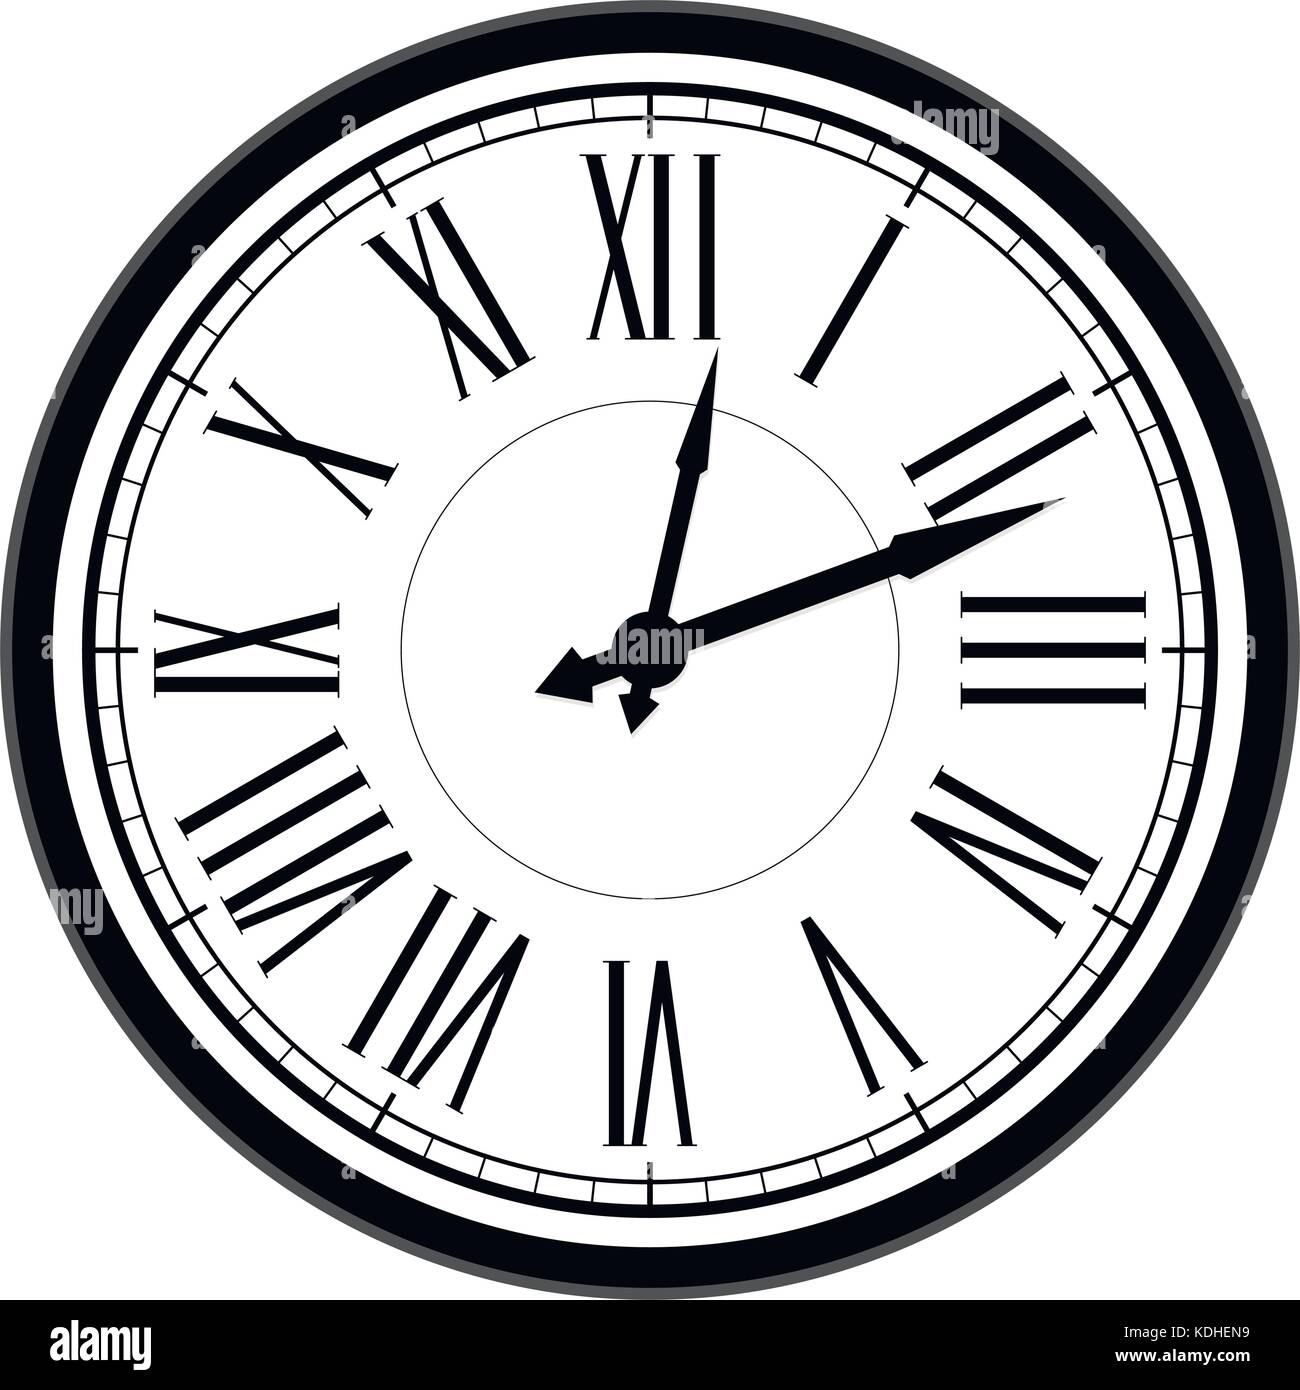 Jahrgang wählen Sie Uhr mit römischen Ziffern. Vektor alte Uhr, Retro clock Antique, Illustration von Vintage time clock face Stock Vektor